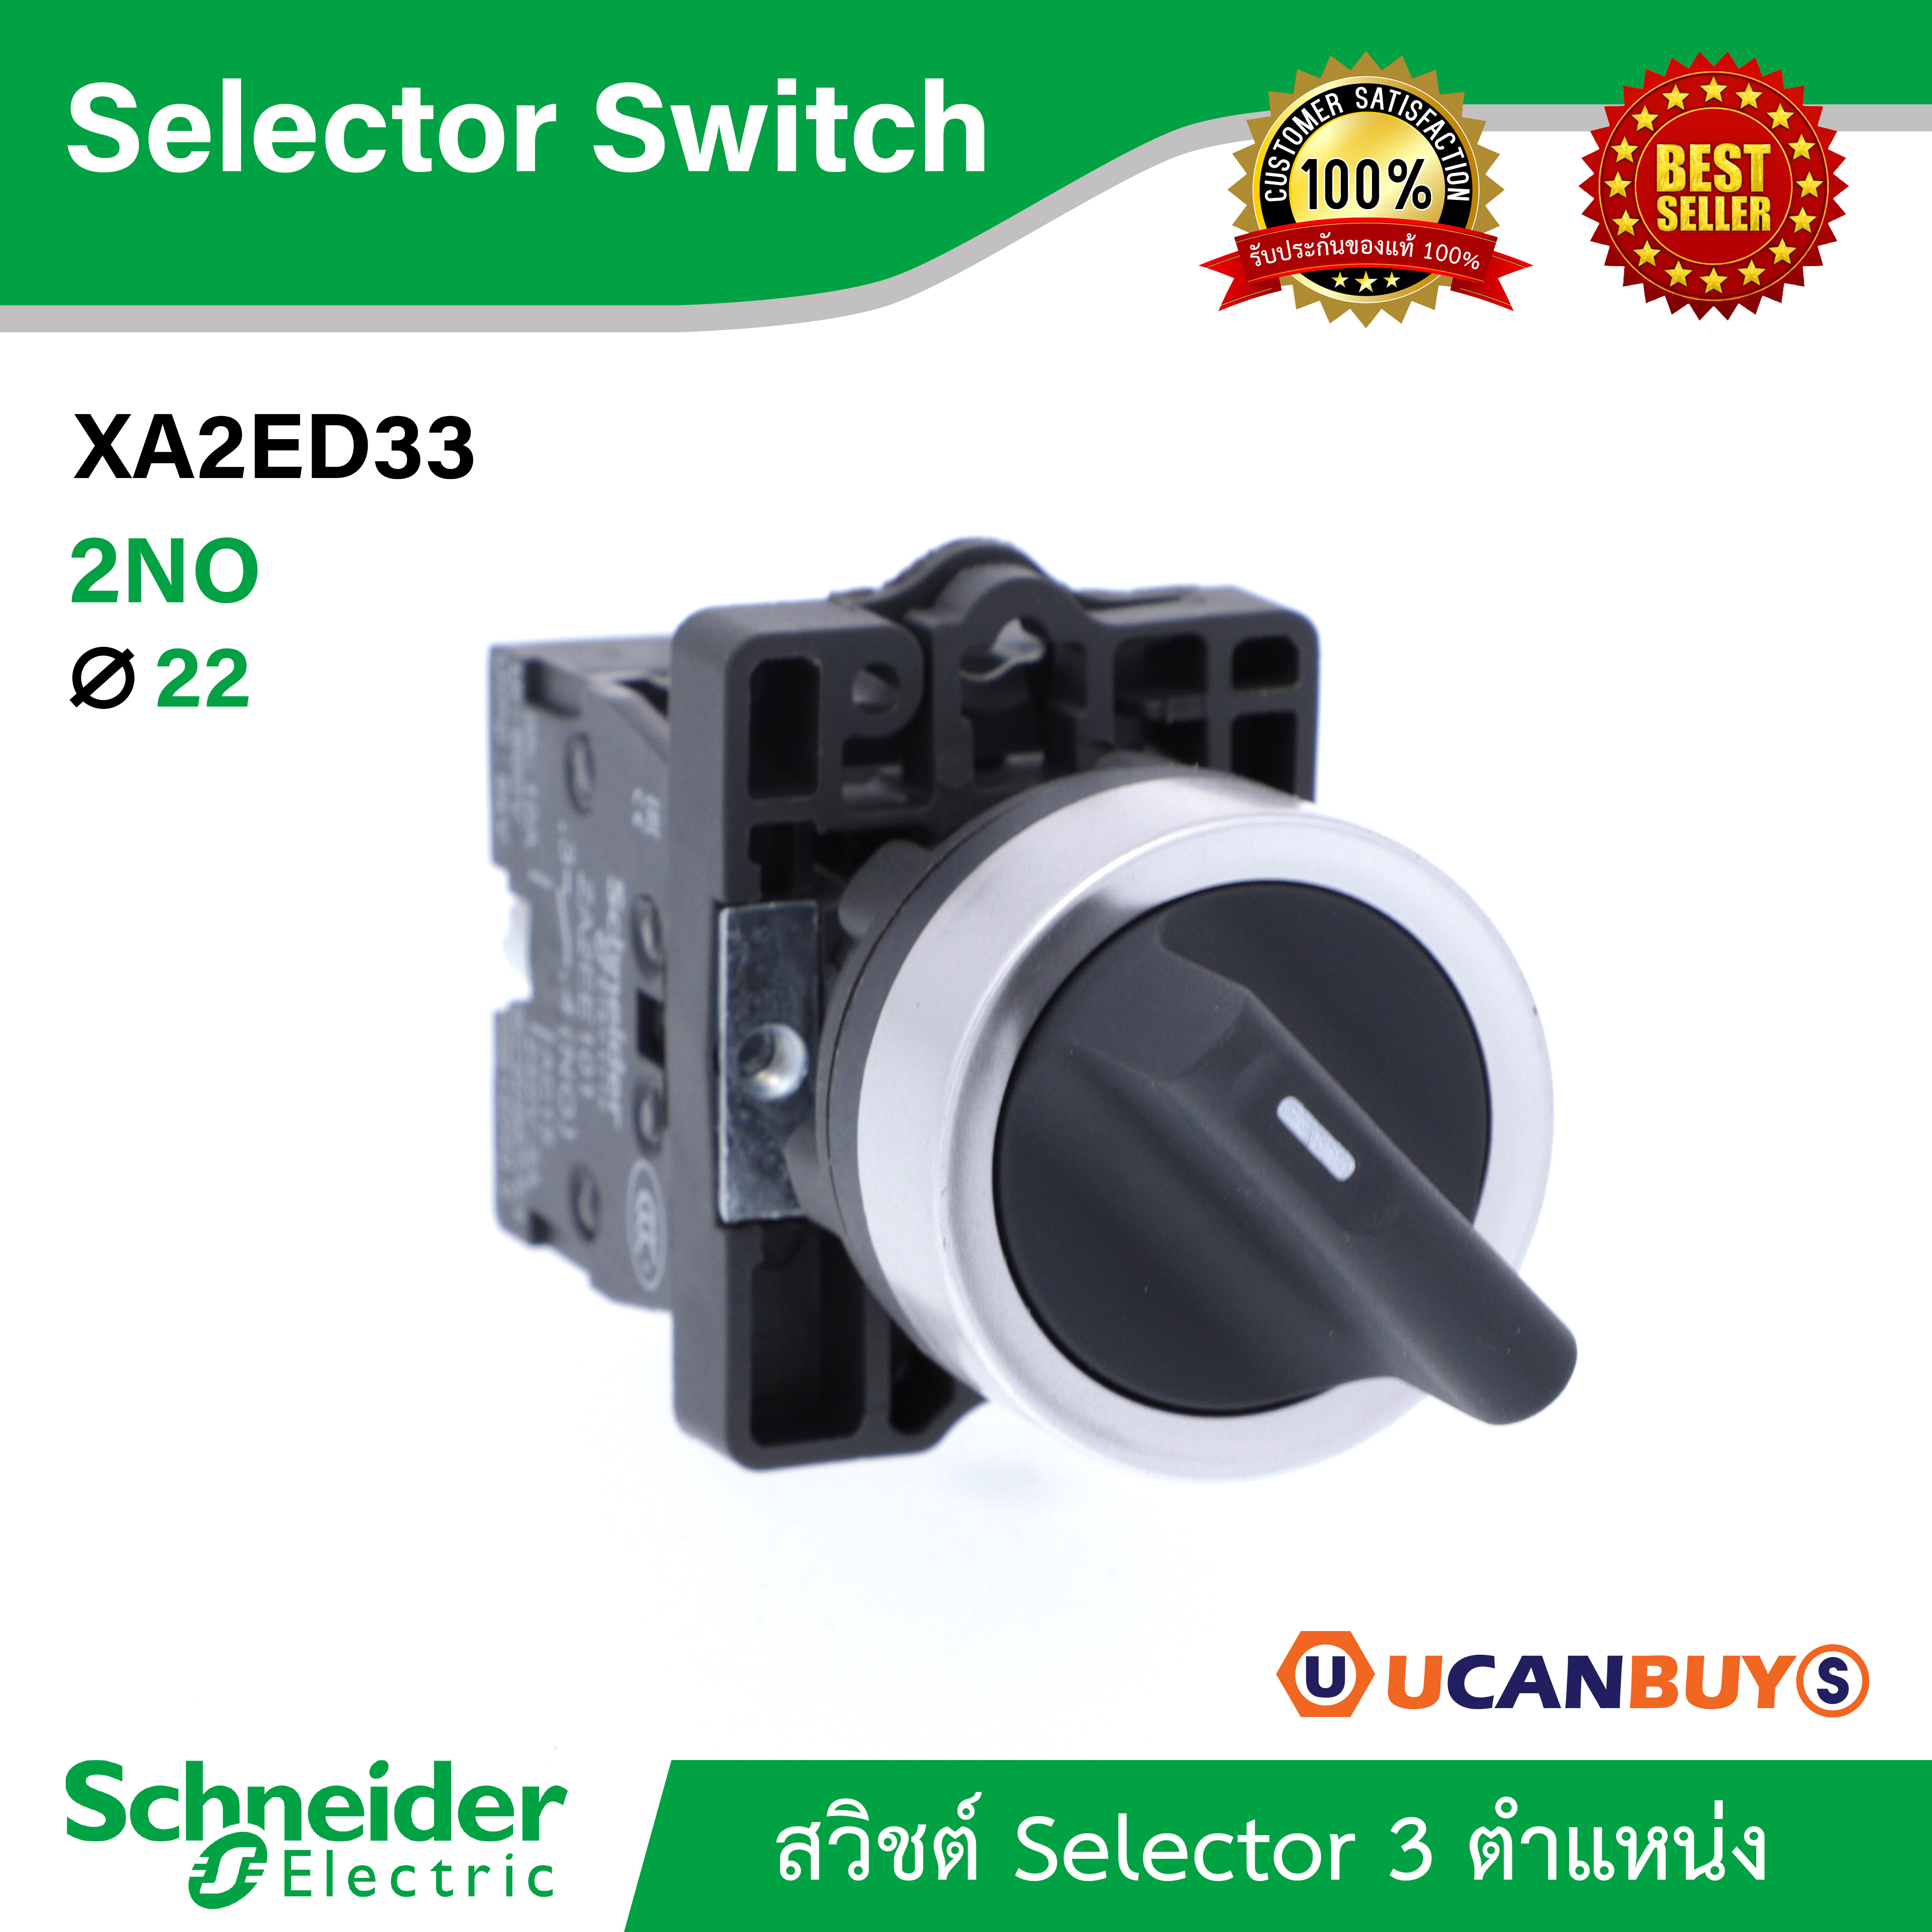 Schneider XA2ED33 สวิชต์ Selector 3 ตำแหน่ง, สีดำ , 2 NO, ขนาดเจาะรู Ø 22